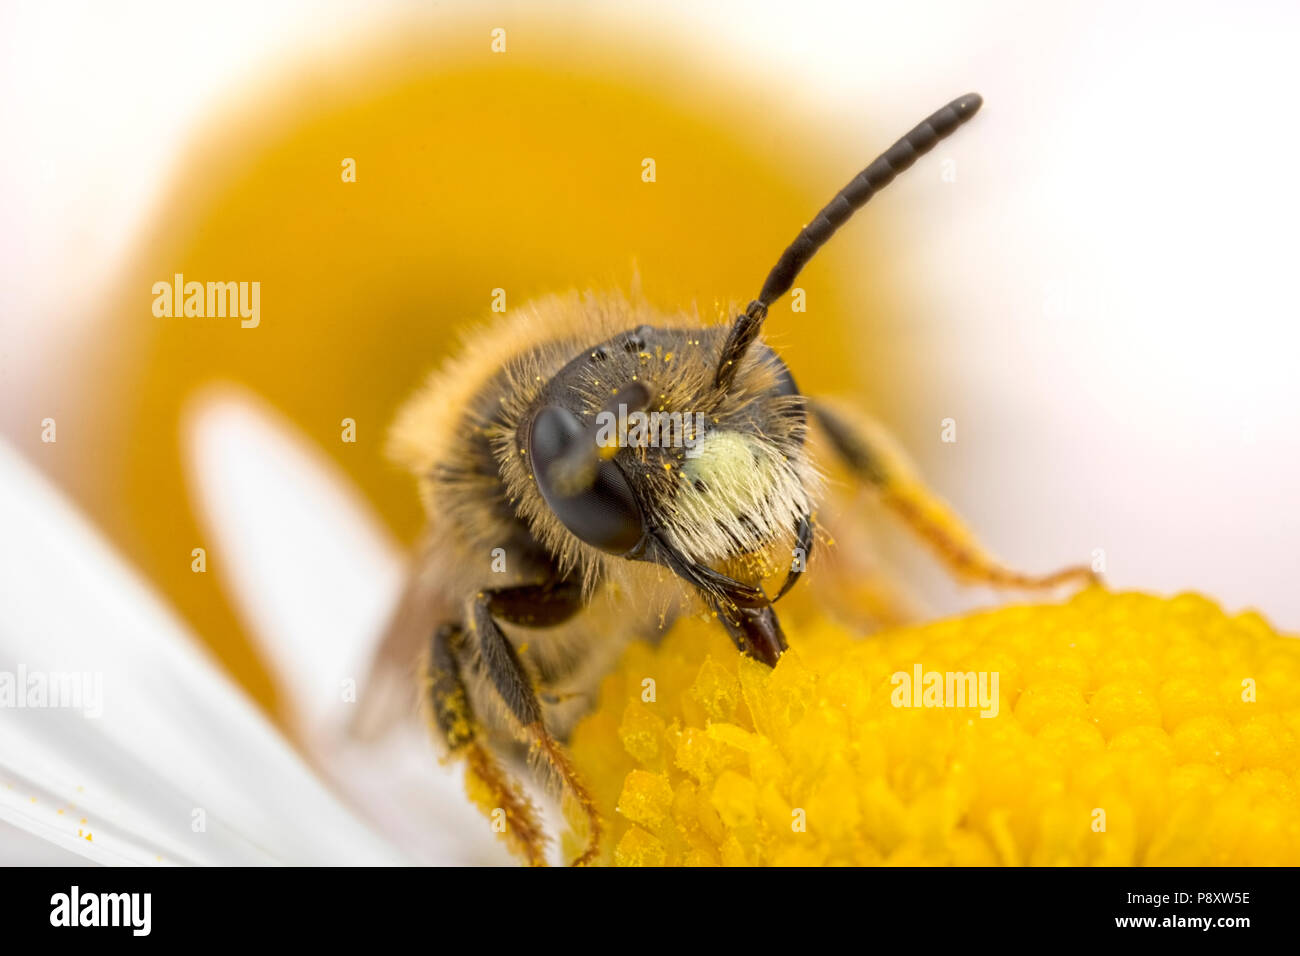 Solitary Bee feeding on a Daisy Stock Photo